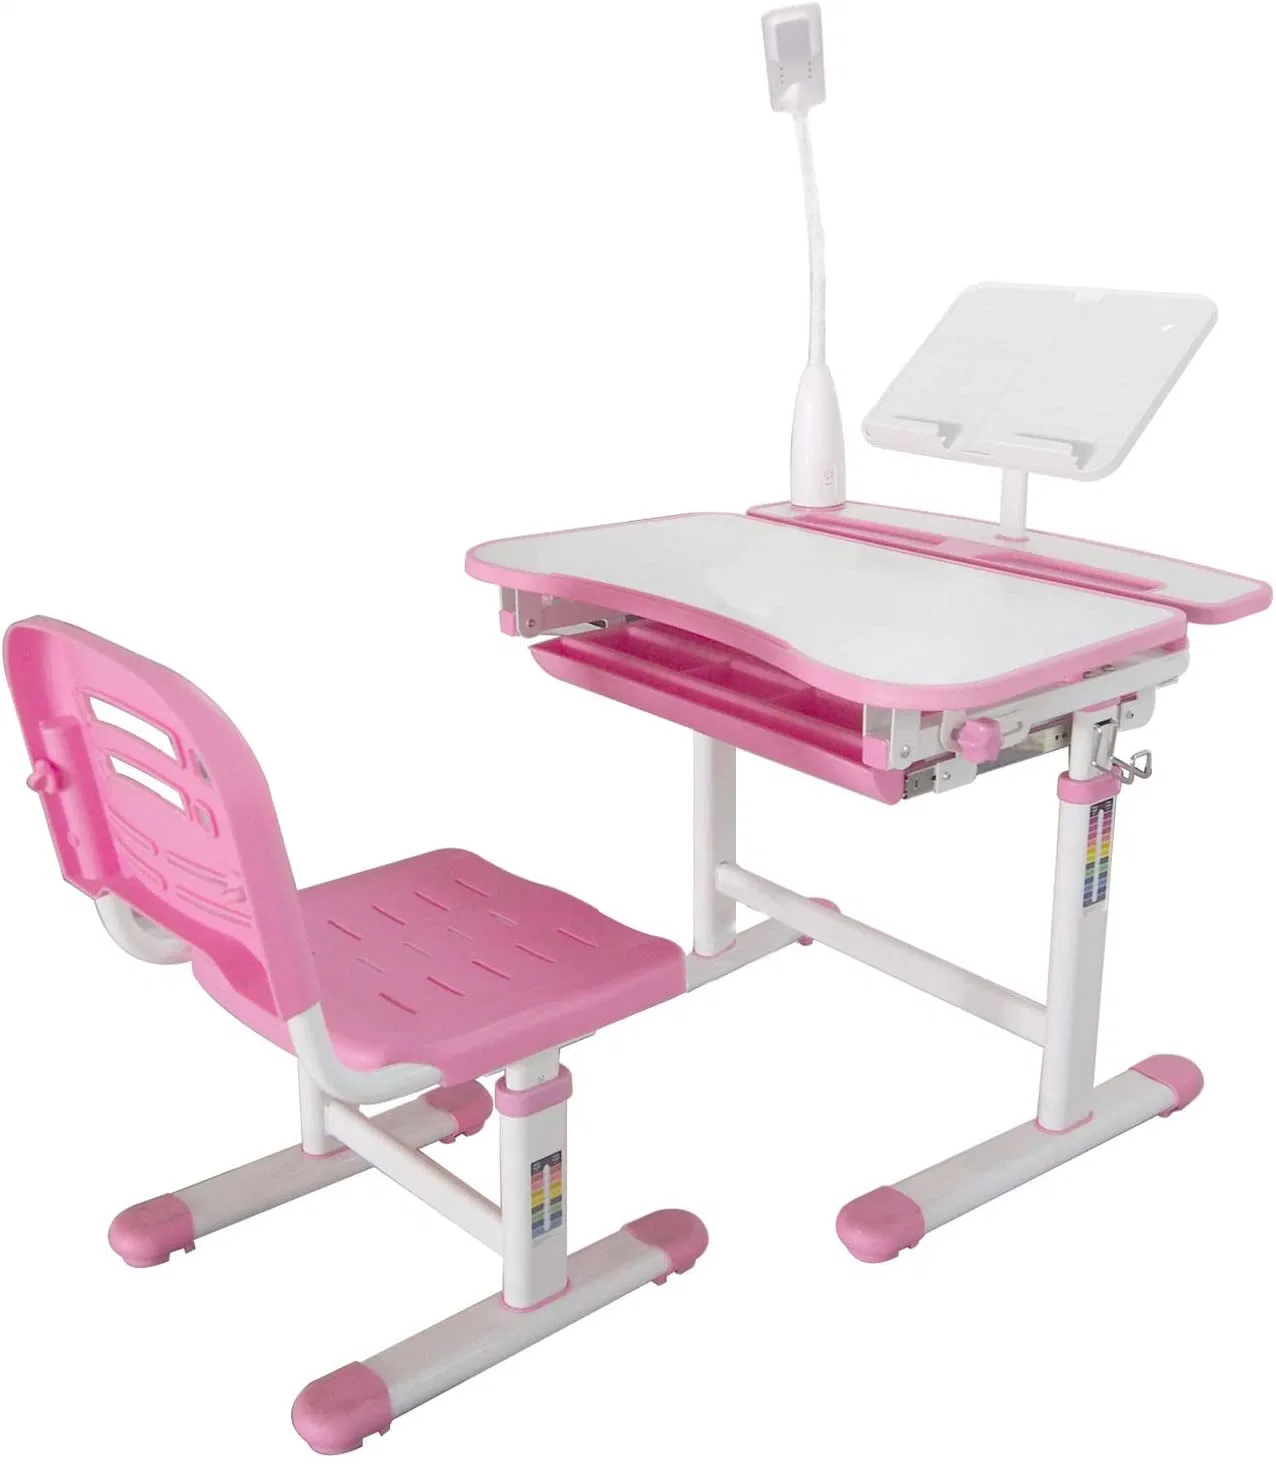 Школьная мебель детский письменный стол и стул с помощью светодиодной подсветки